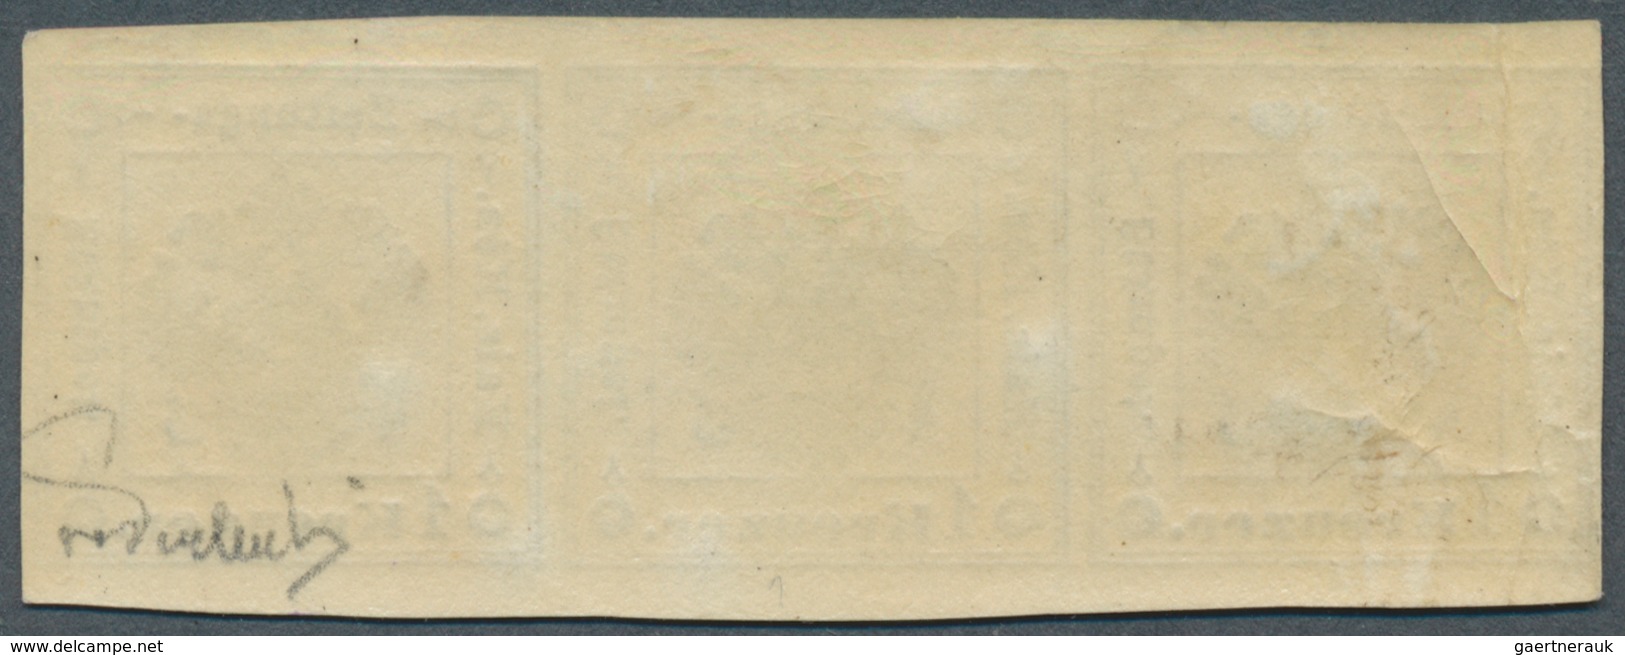 Österreich - Lombardei Und Venetien - Zeitungsstempelmarken: 1859, 1 Kreuzer Schwarz, Type I, Waager - Lombardy-Venetia